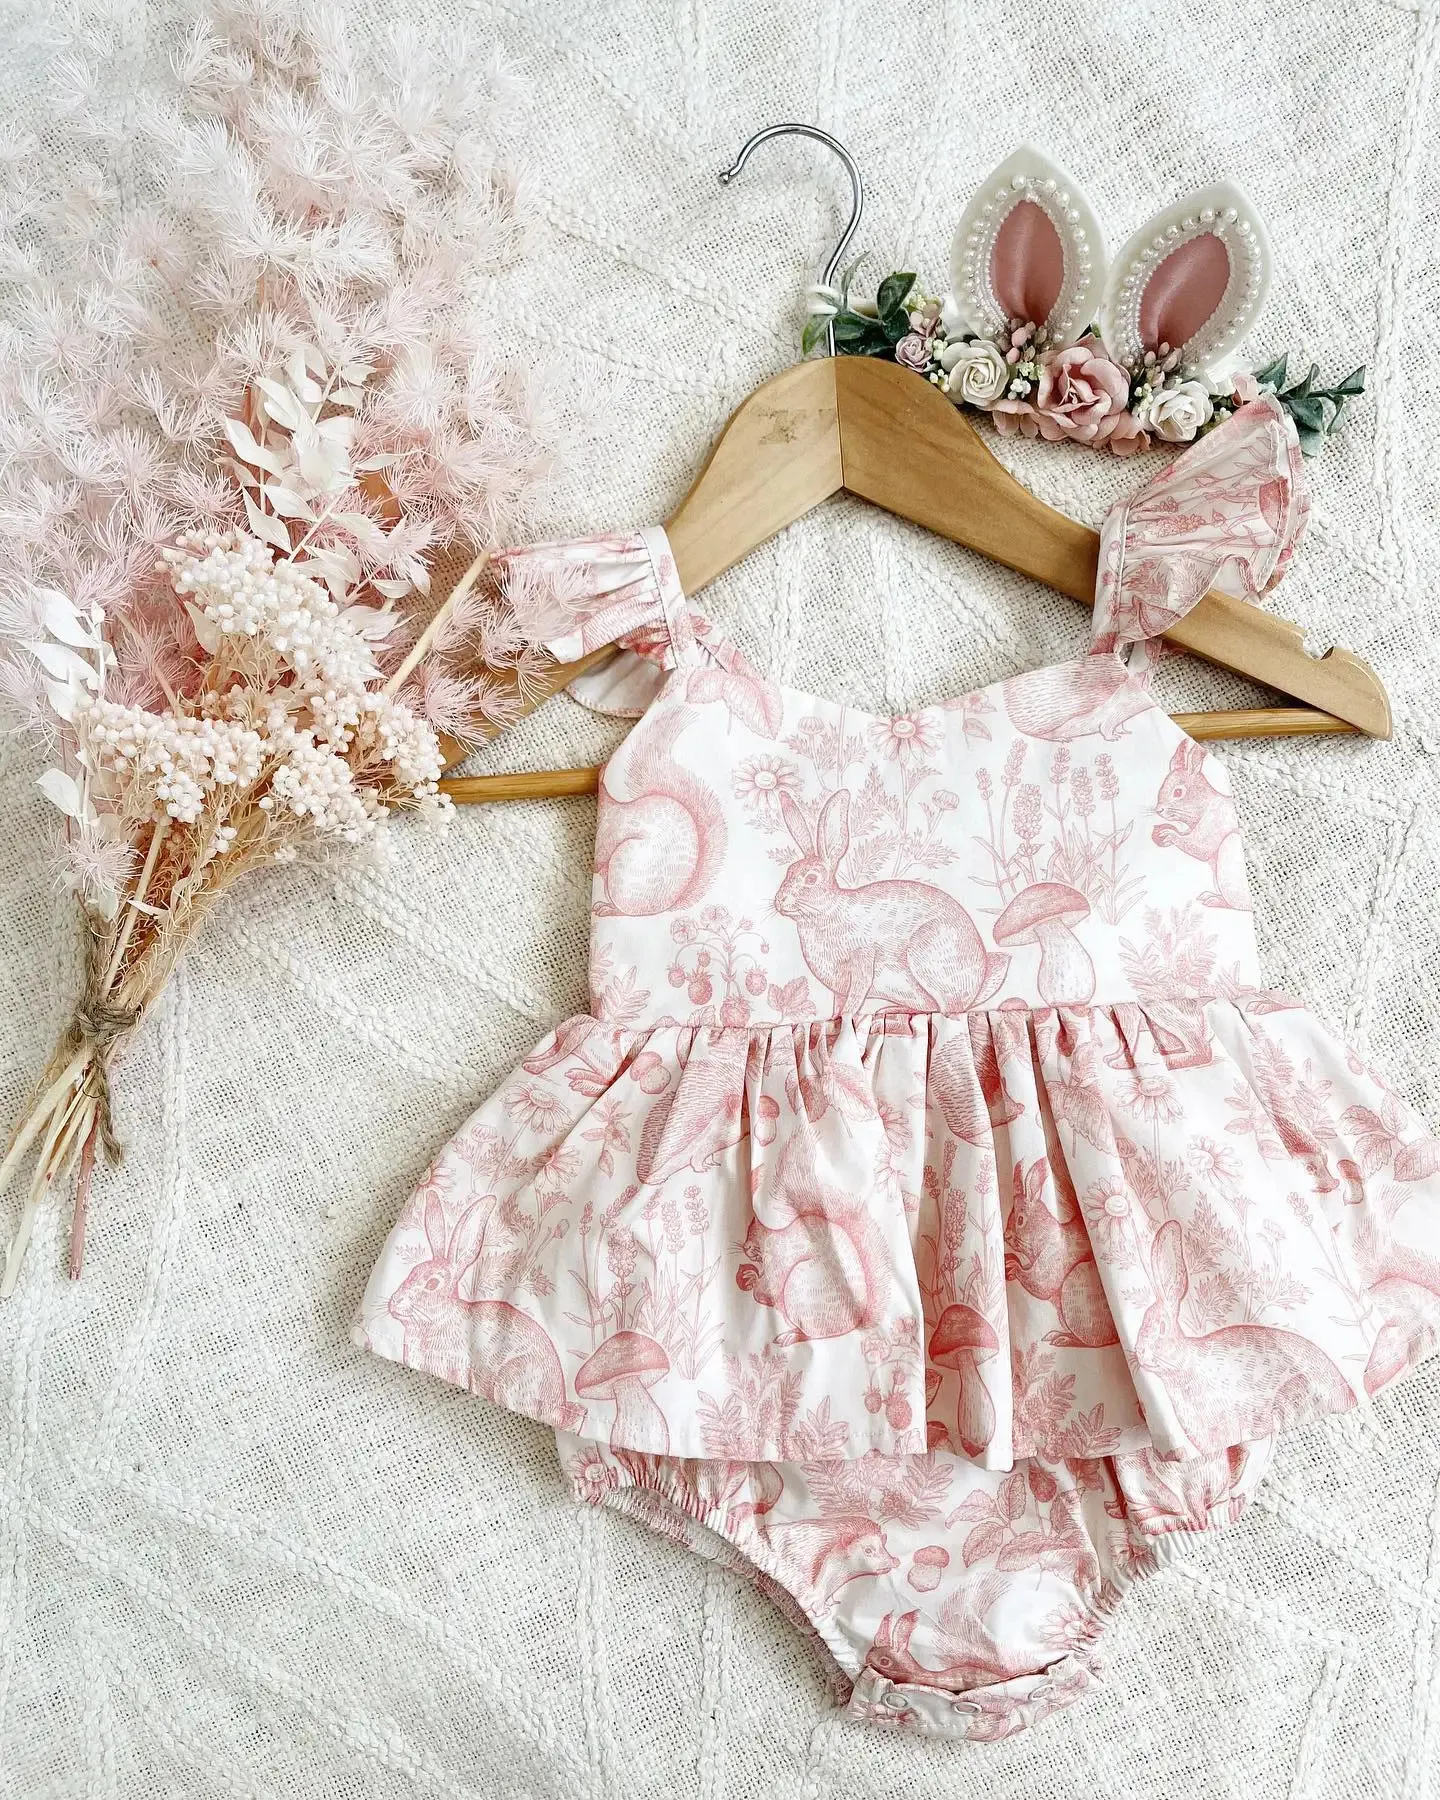 Bebek kız romper/kız elbise karikatür tavşan baskı tasarımı kolsuz fırfır etek etek etli elbise tulum yaz kıyafeti 240409